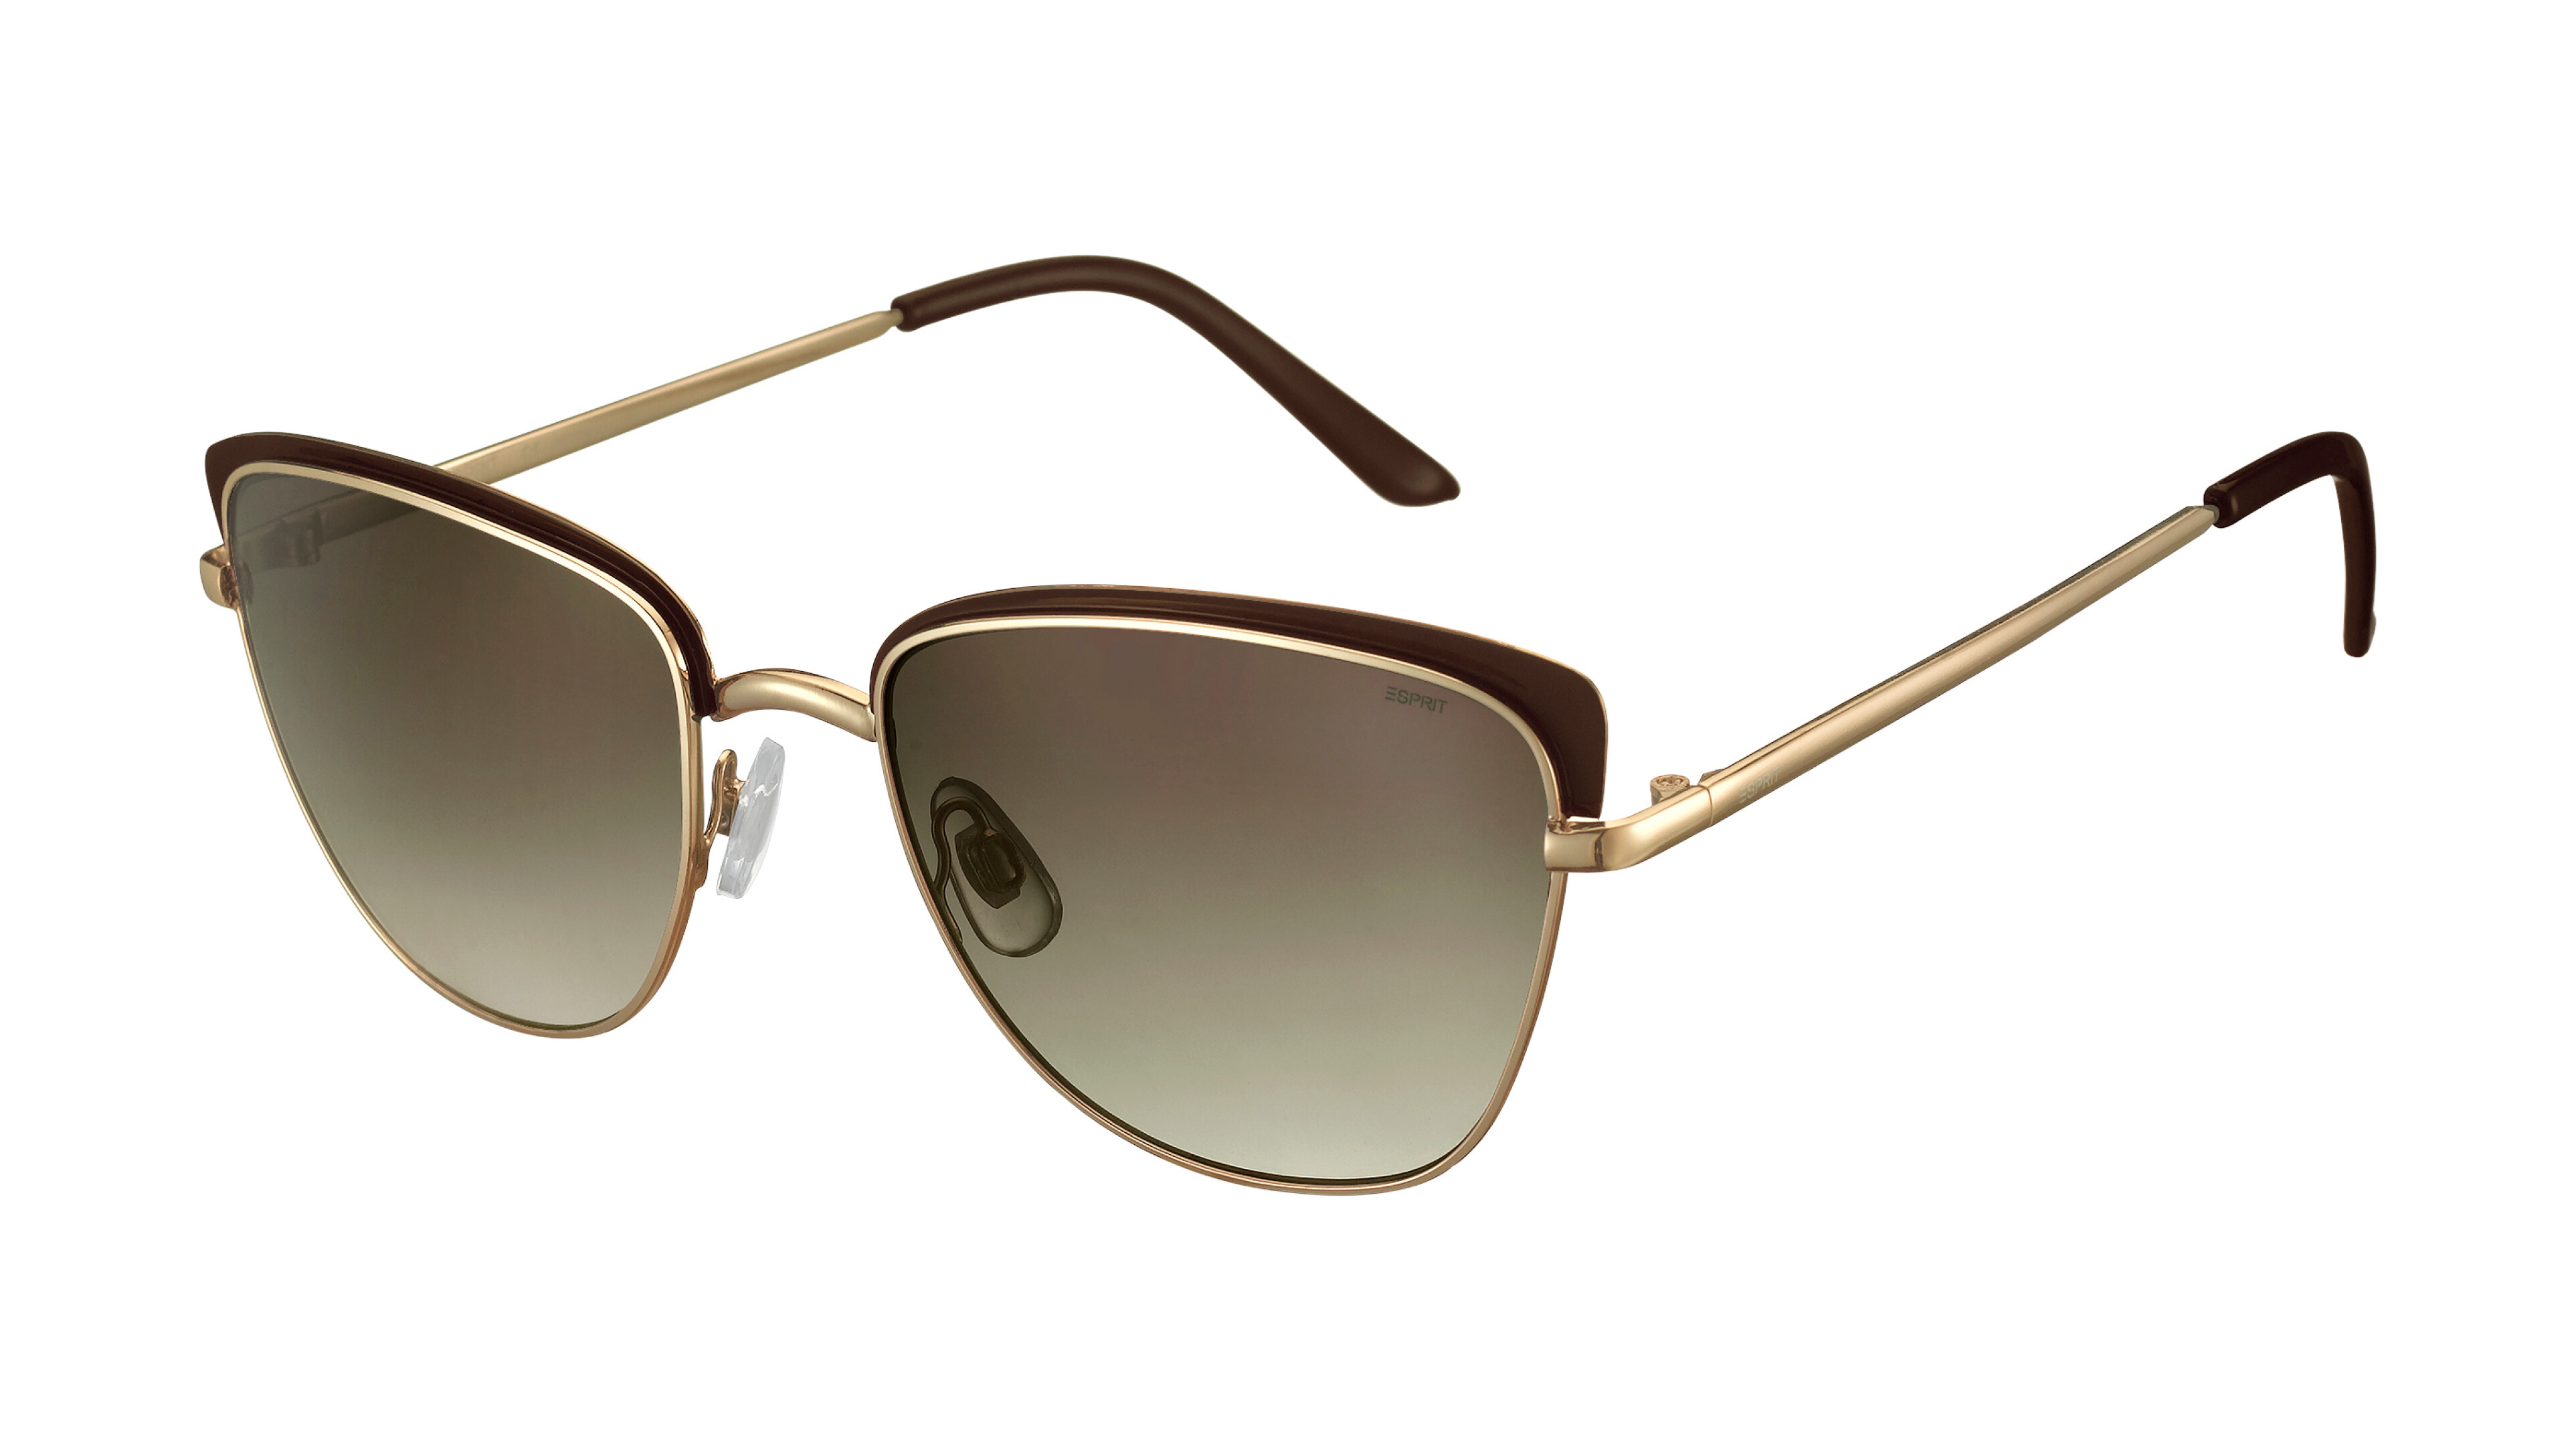 [products.image.front] Esprit 39150 535 Sonnenbrille